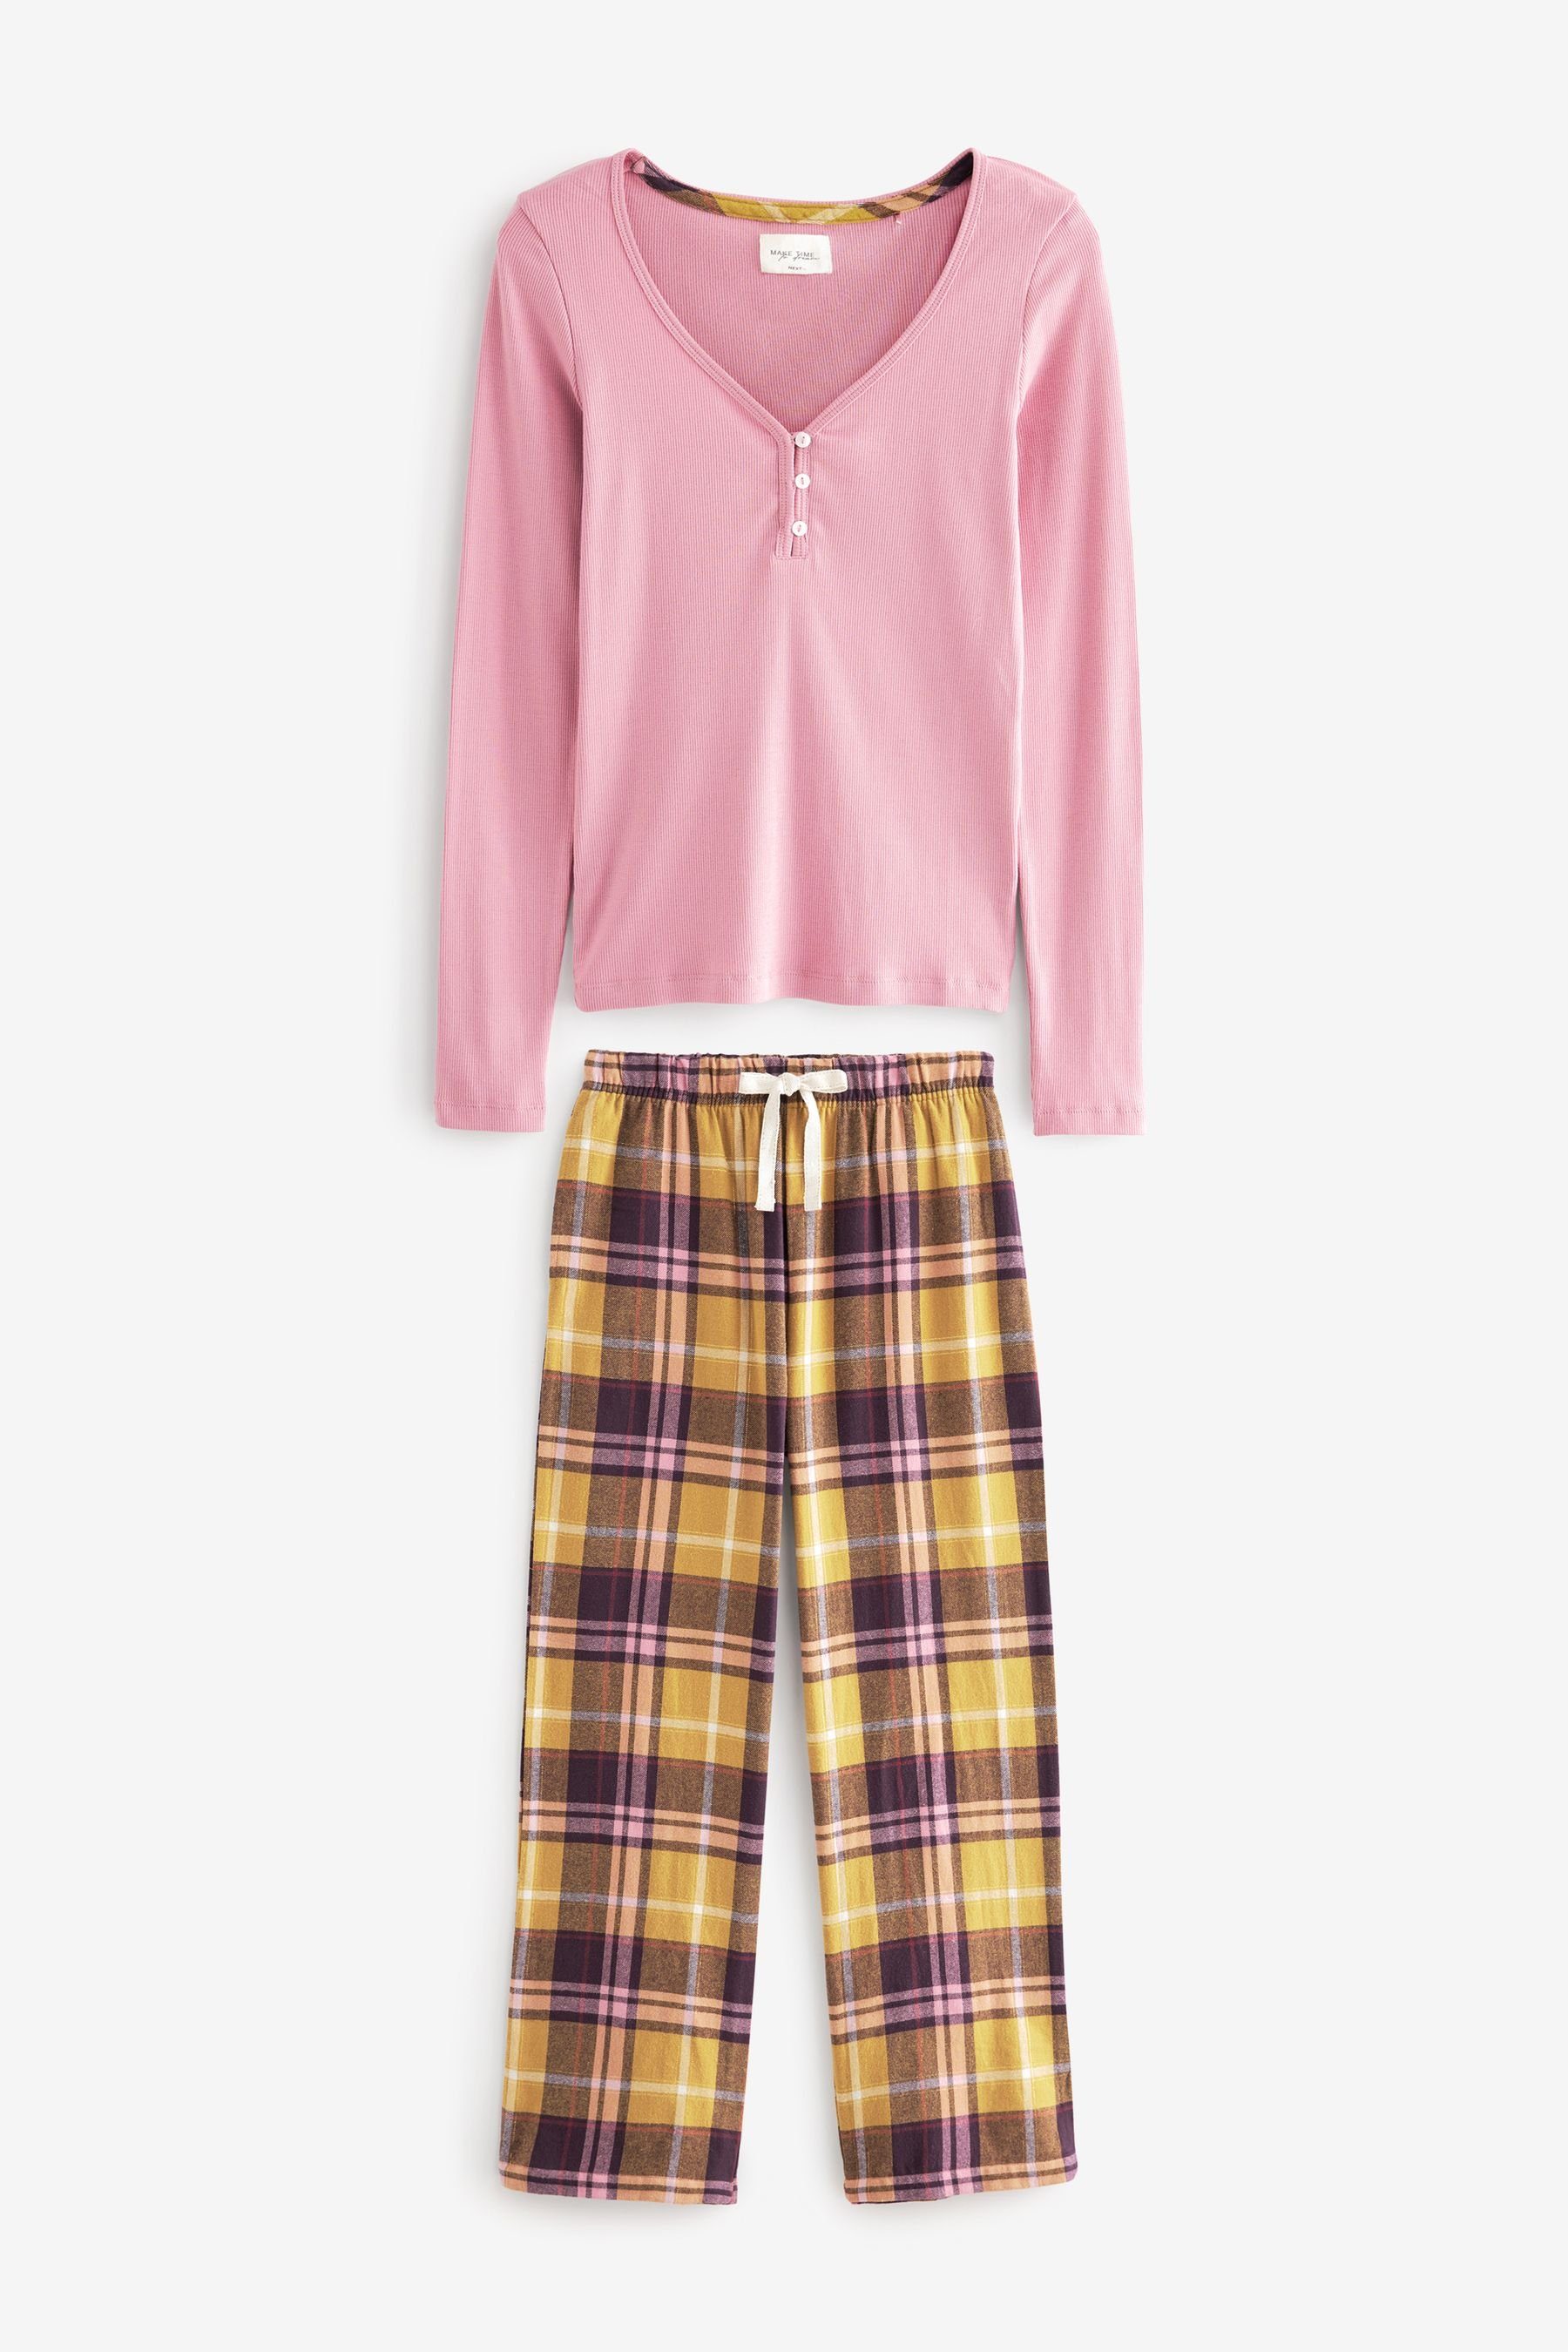 Next Pyjama Schlafanzug mit geripptem Top und Flanellhose (2 tlg) Pink